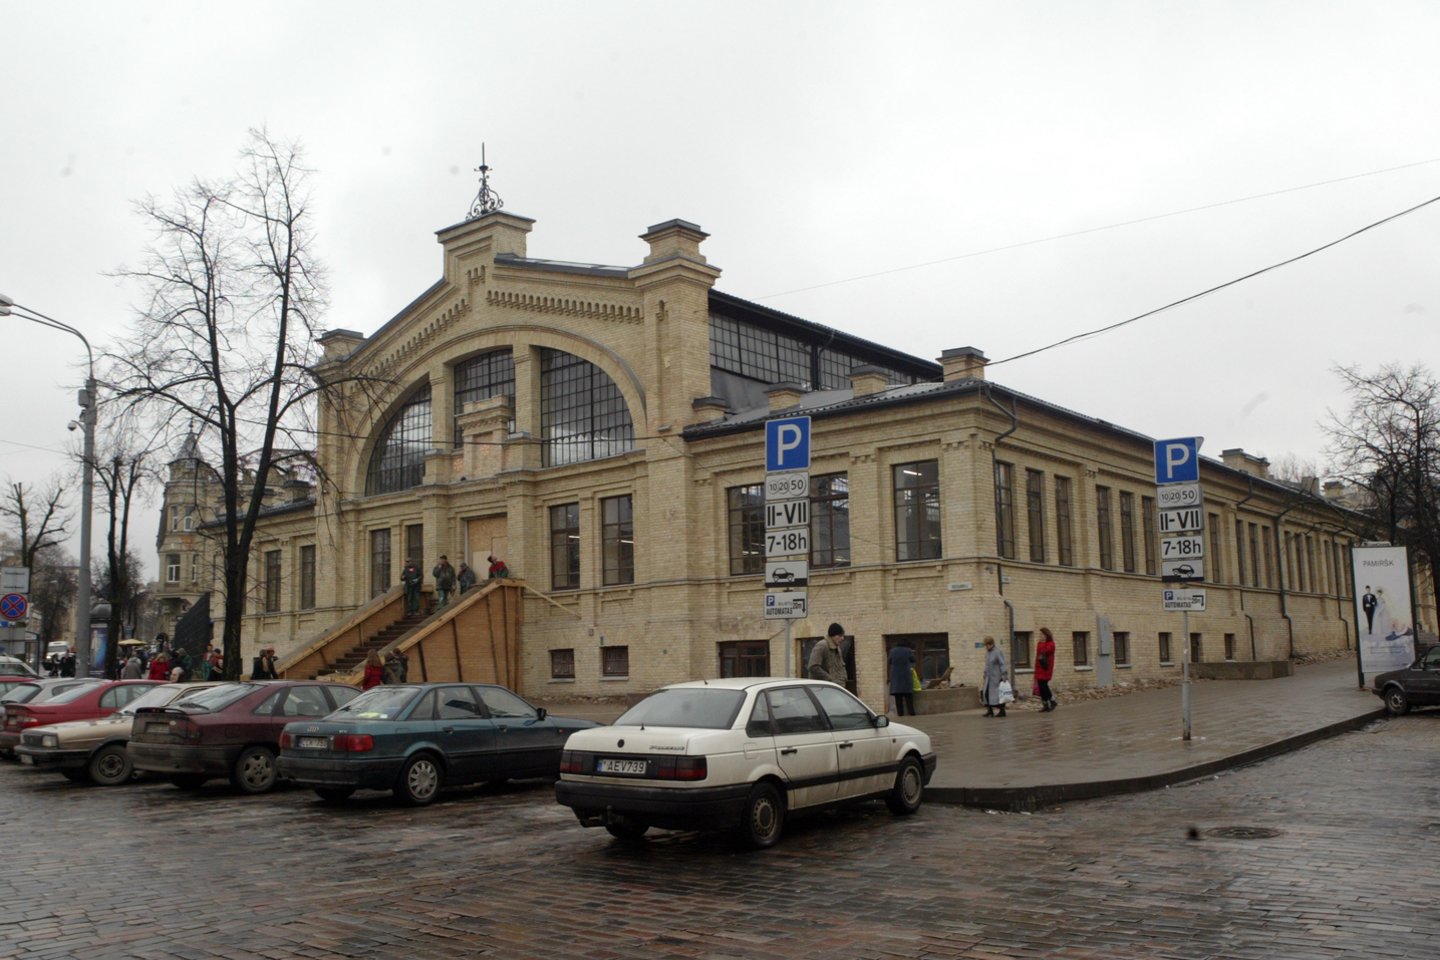 1947 m. mirė inžinierius ir architektas Vaclovas Michnevičius (apie 85 m.). Pagal jo projektus pastatyta Vilniaus Halės turgus (nuotr.), dabartinis Rusų dramos teatras, Birštono, Vilniaus Žvėryno bažnyčios.